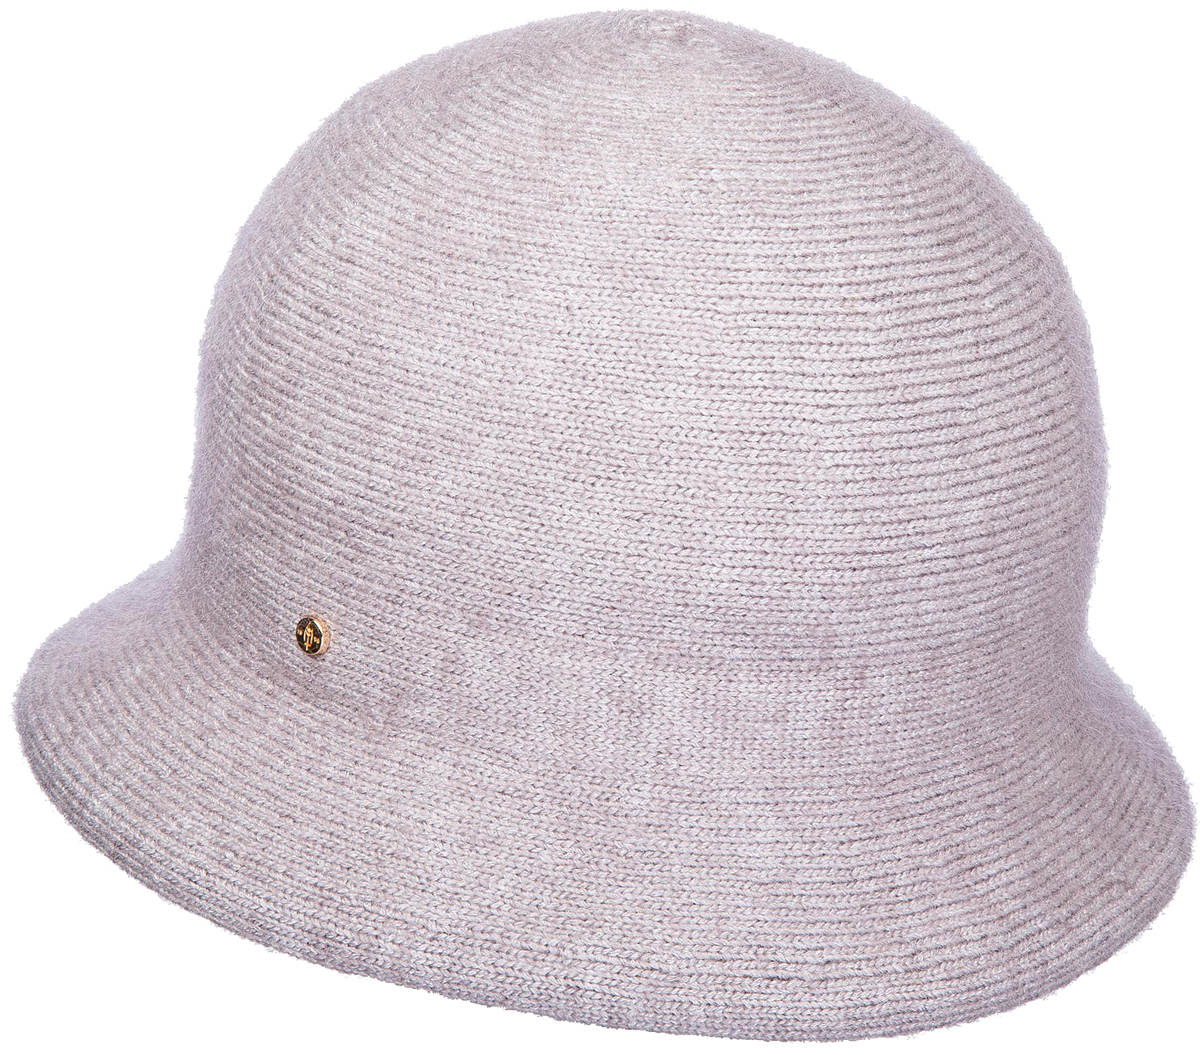 Шляпа женская Canoe Dolli, цвет: светло-серый. 3446257. Размер 56/58